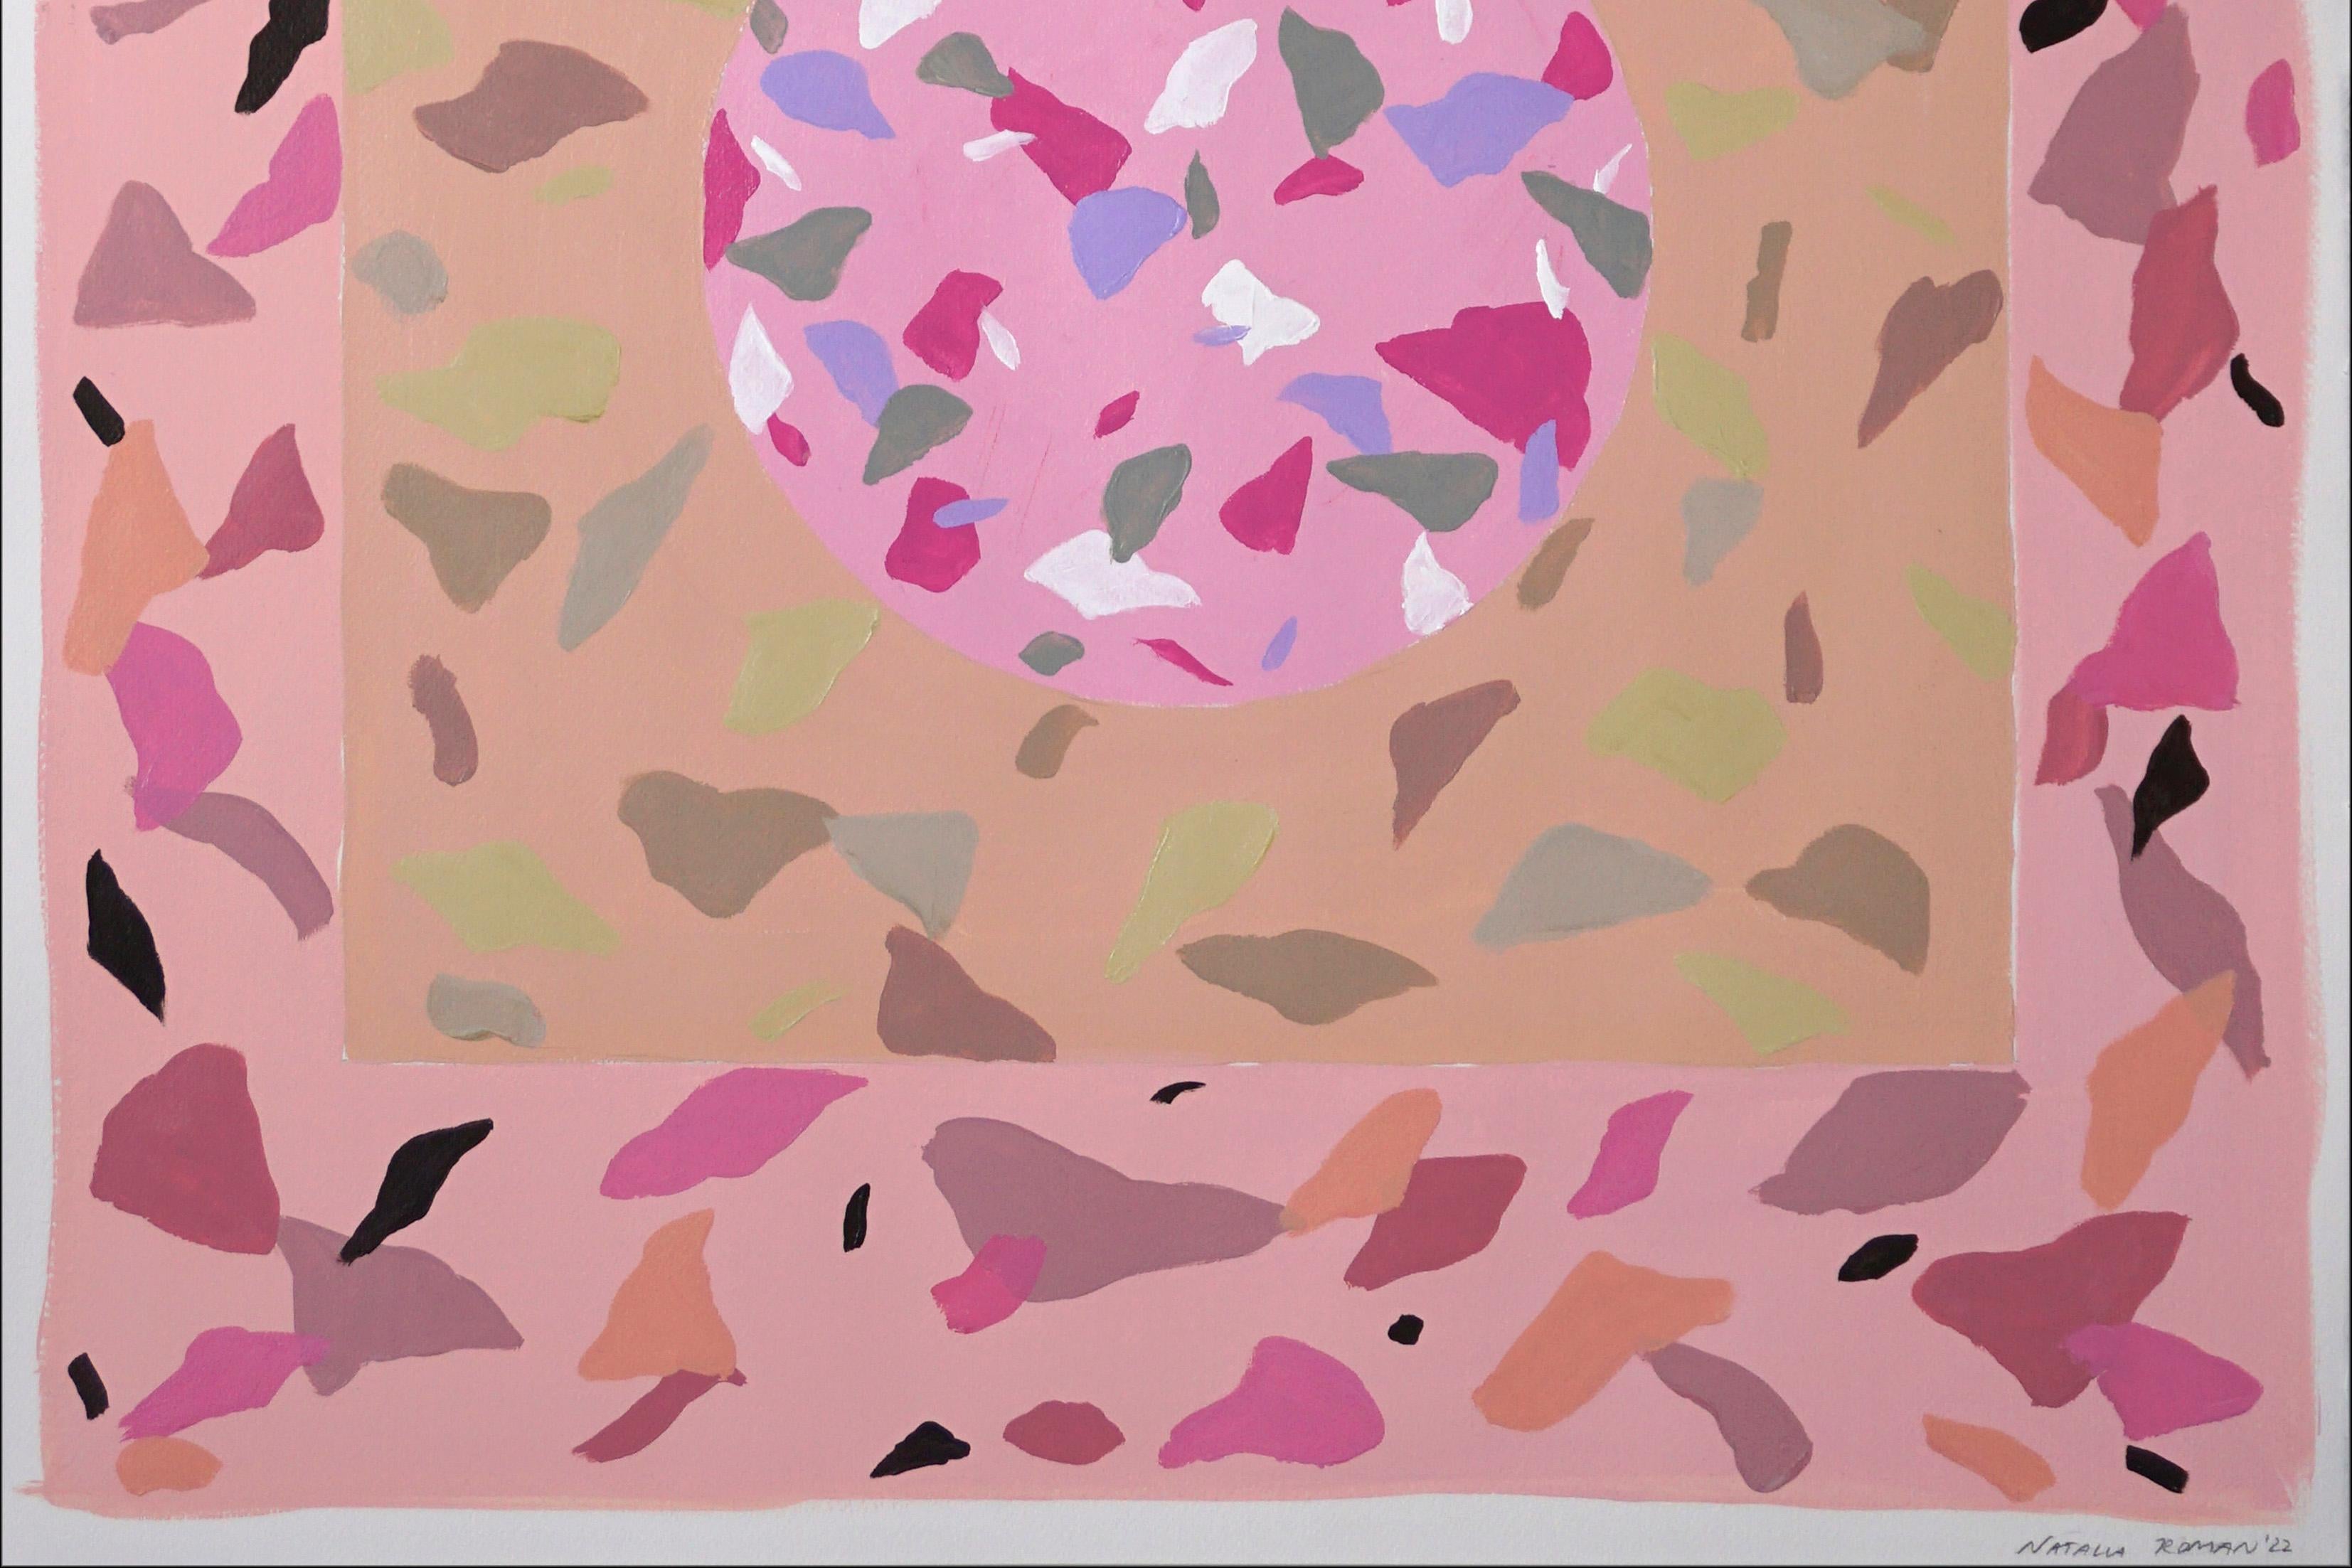 Pastellrosa Terrazzofliesen, Inspiration in weichen, warmen Hauttönen  (Braun), Abstract Painting, von Natalia Roman